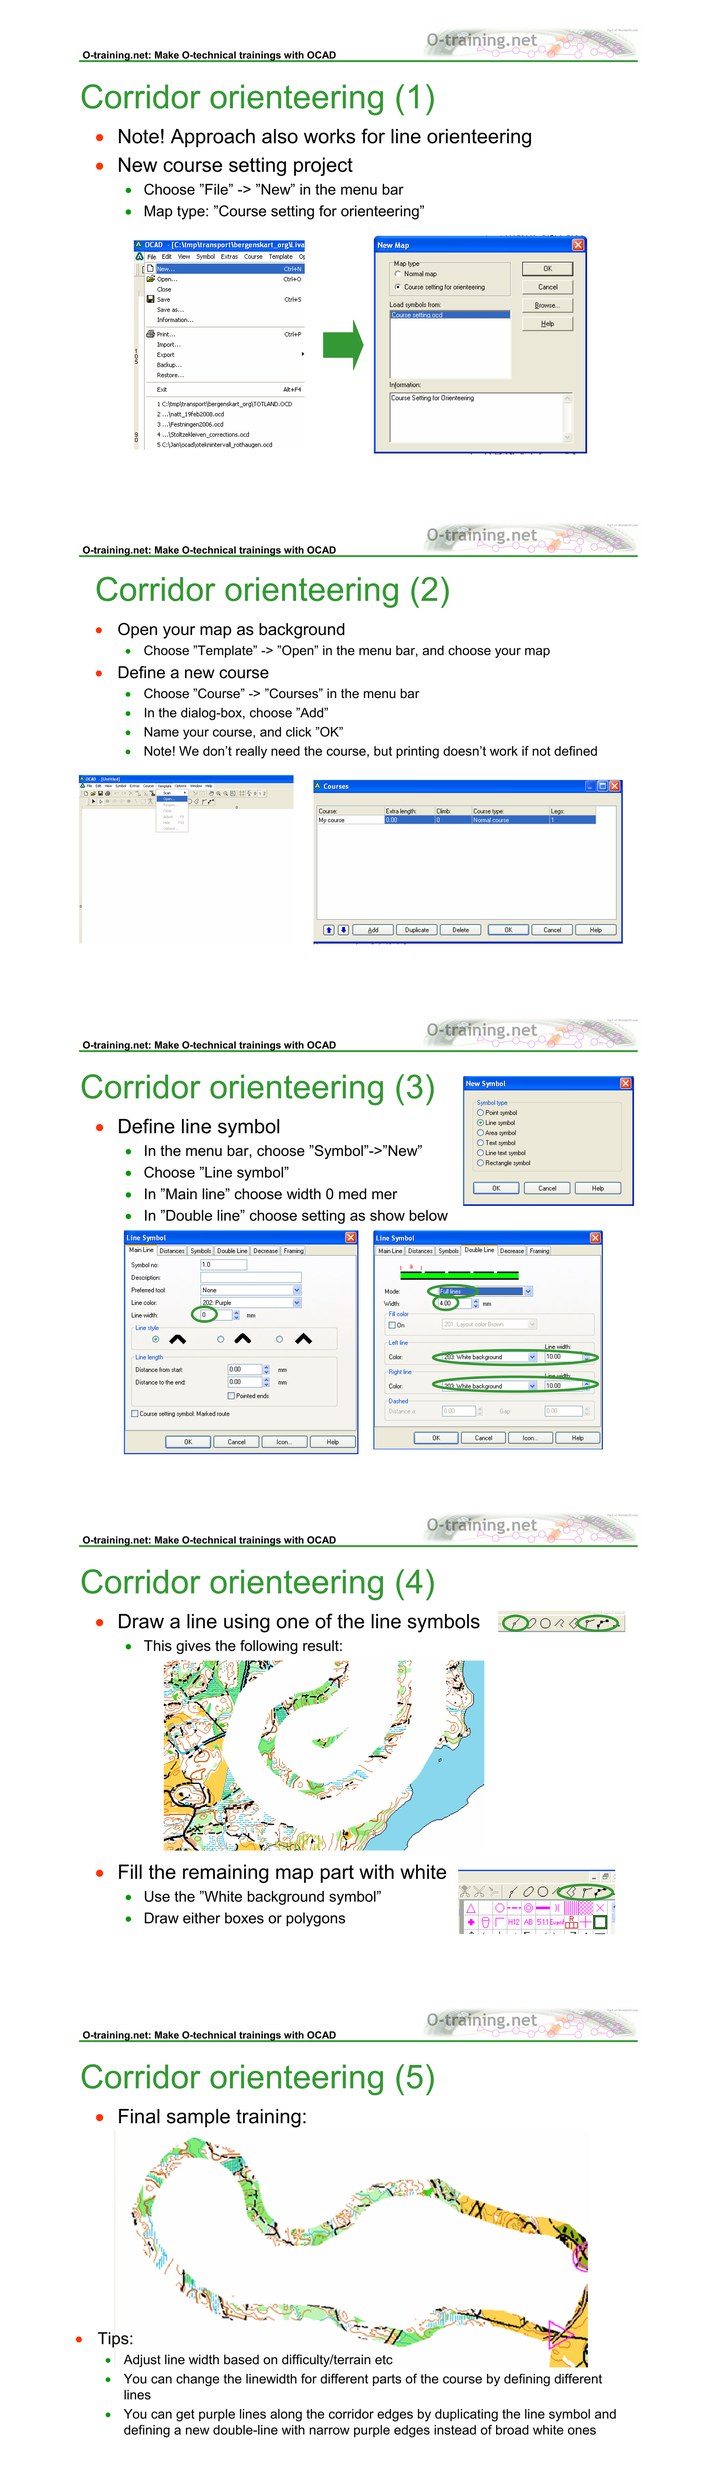 Image:Corridor orienteering OCAD.jpg